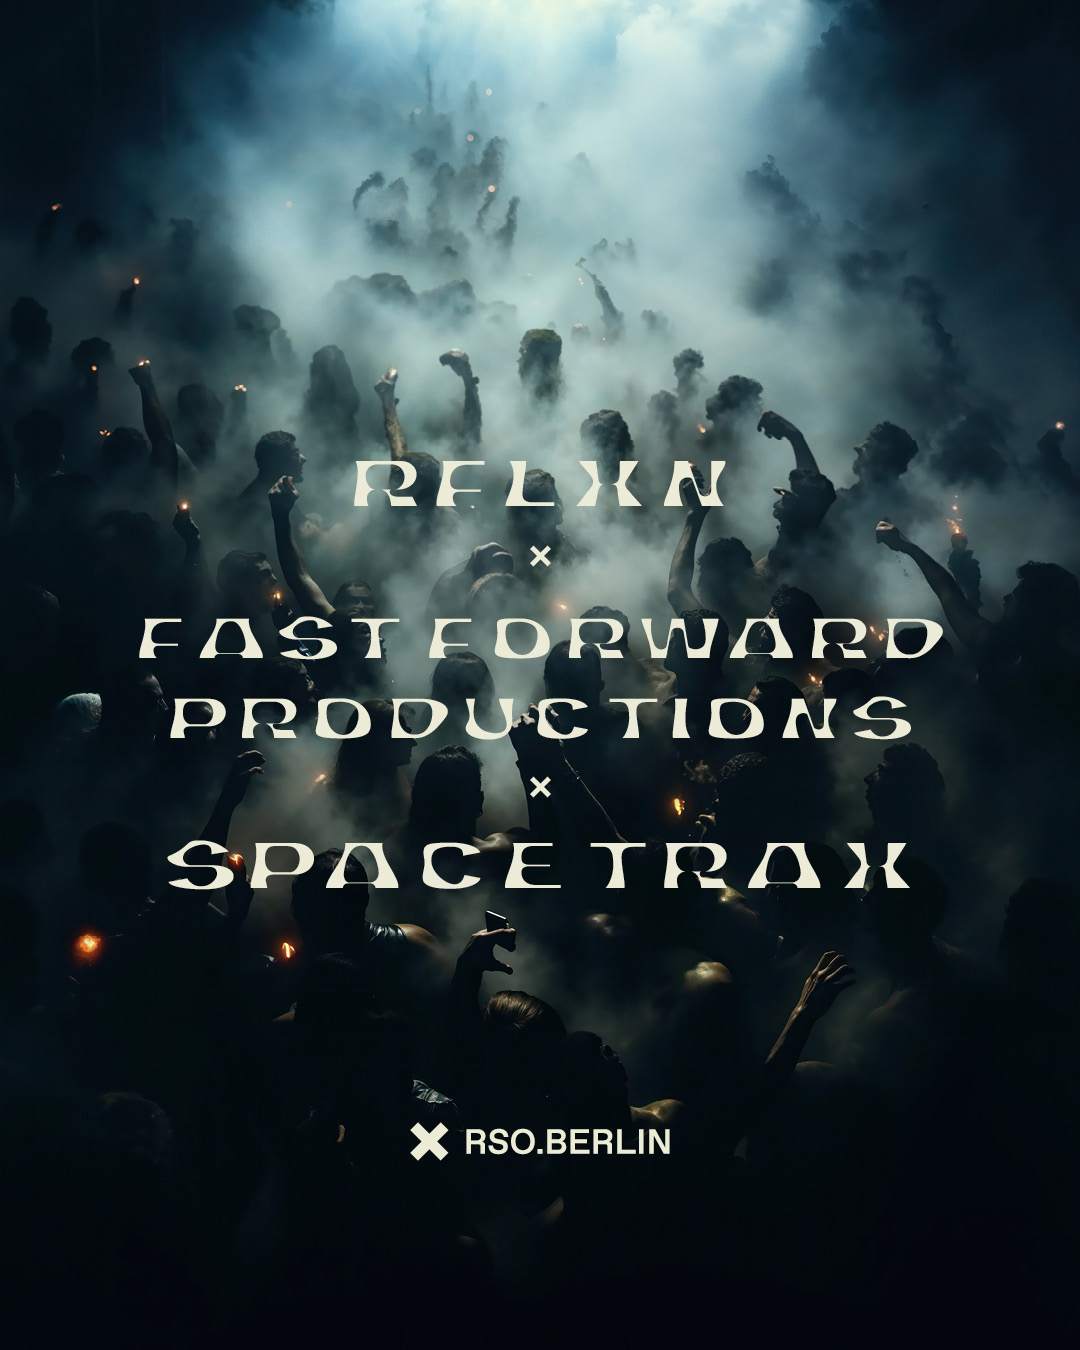 RFLXN x Fast Forward x Space Trax with Daria Kolosova, Cybersex, Elli Acula, Setaoc Mass, Plaza - フライヤー表